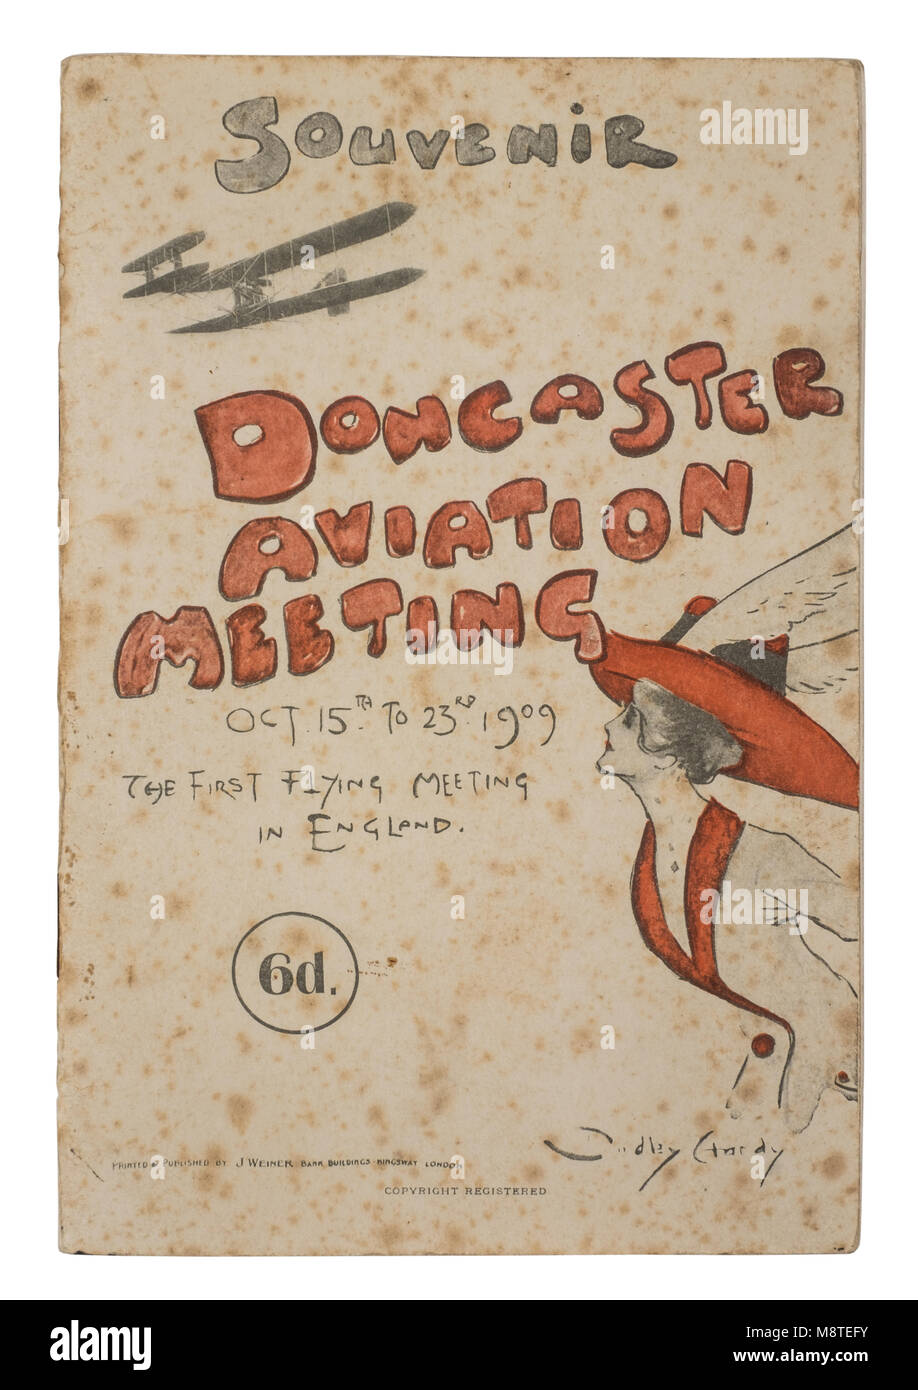 Doncaster 1909 Rare Réunion Aviation programme souvenir. Tenue du 15 au 23 octobre 1909, c'était la première réunion officielle de battant en Angleterre. Banque D'Images